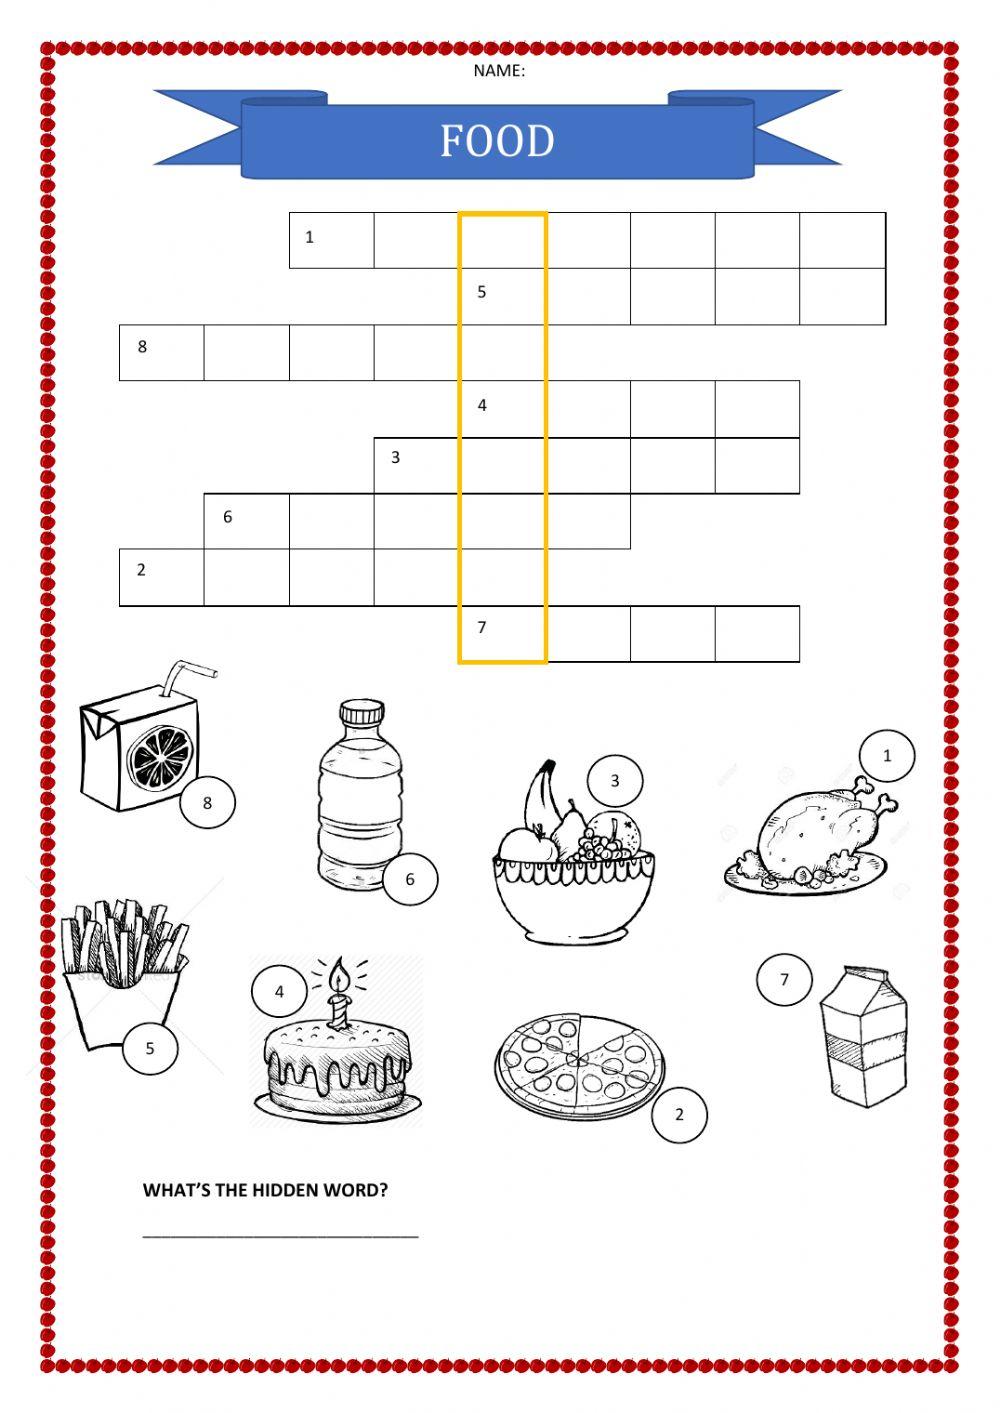 Food crosswords